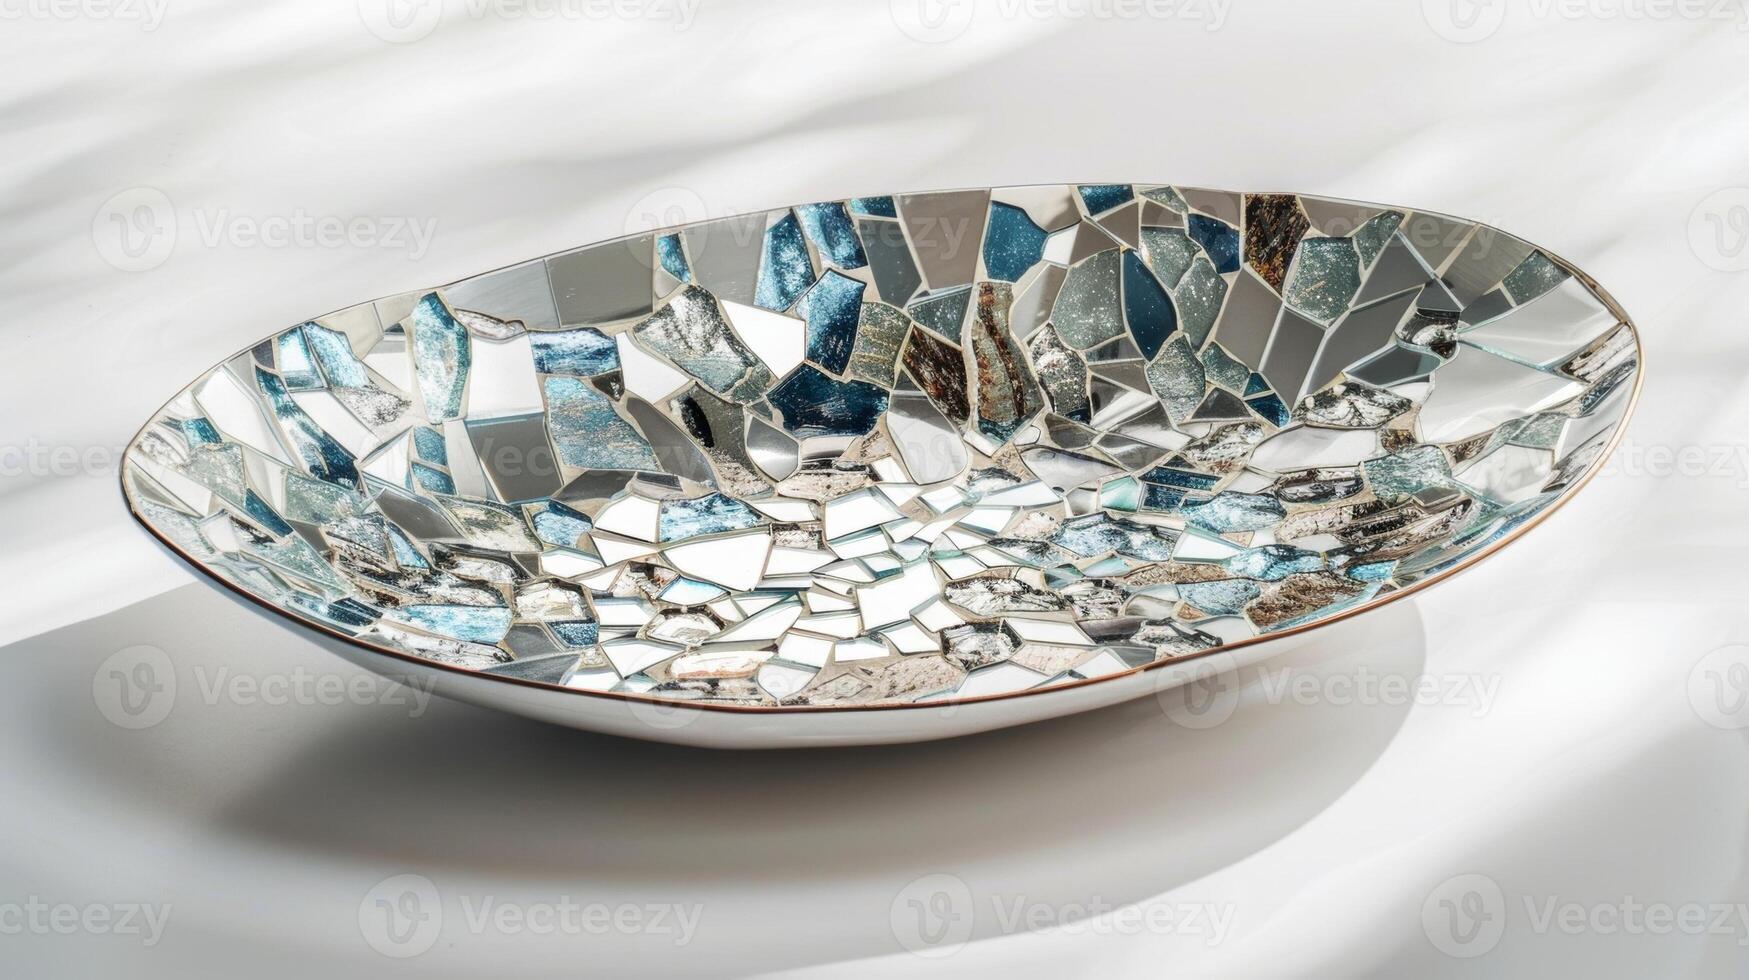 een keramisch portie schotel versierd met stukken van gebroken spiegel en mozaïek- tegels creëren een verbijsterend en reflecterende middelpunt. foto